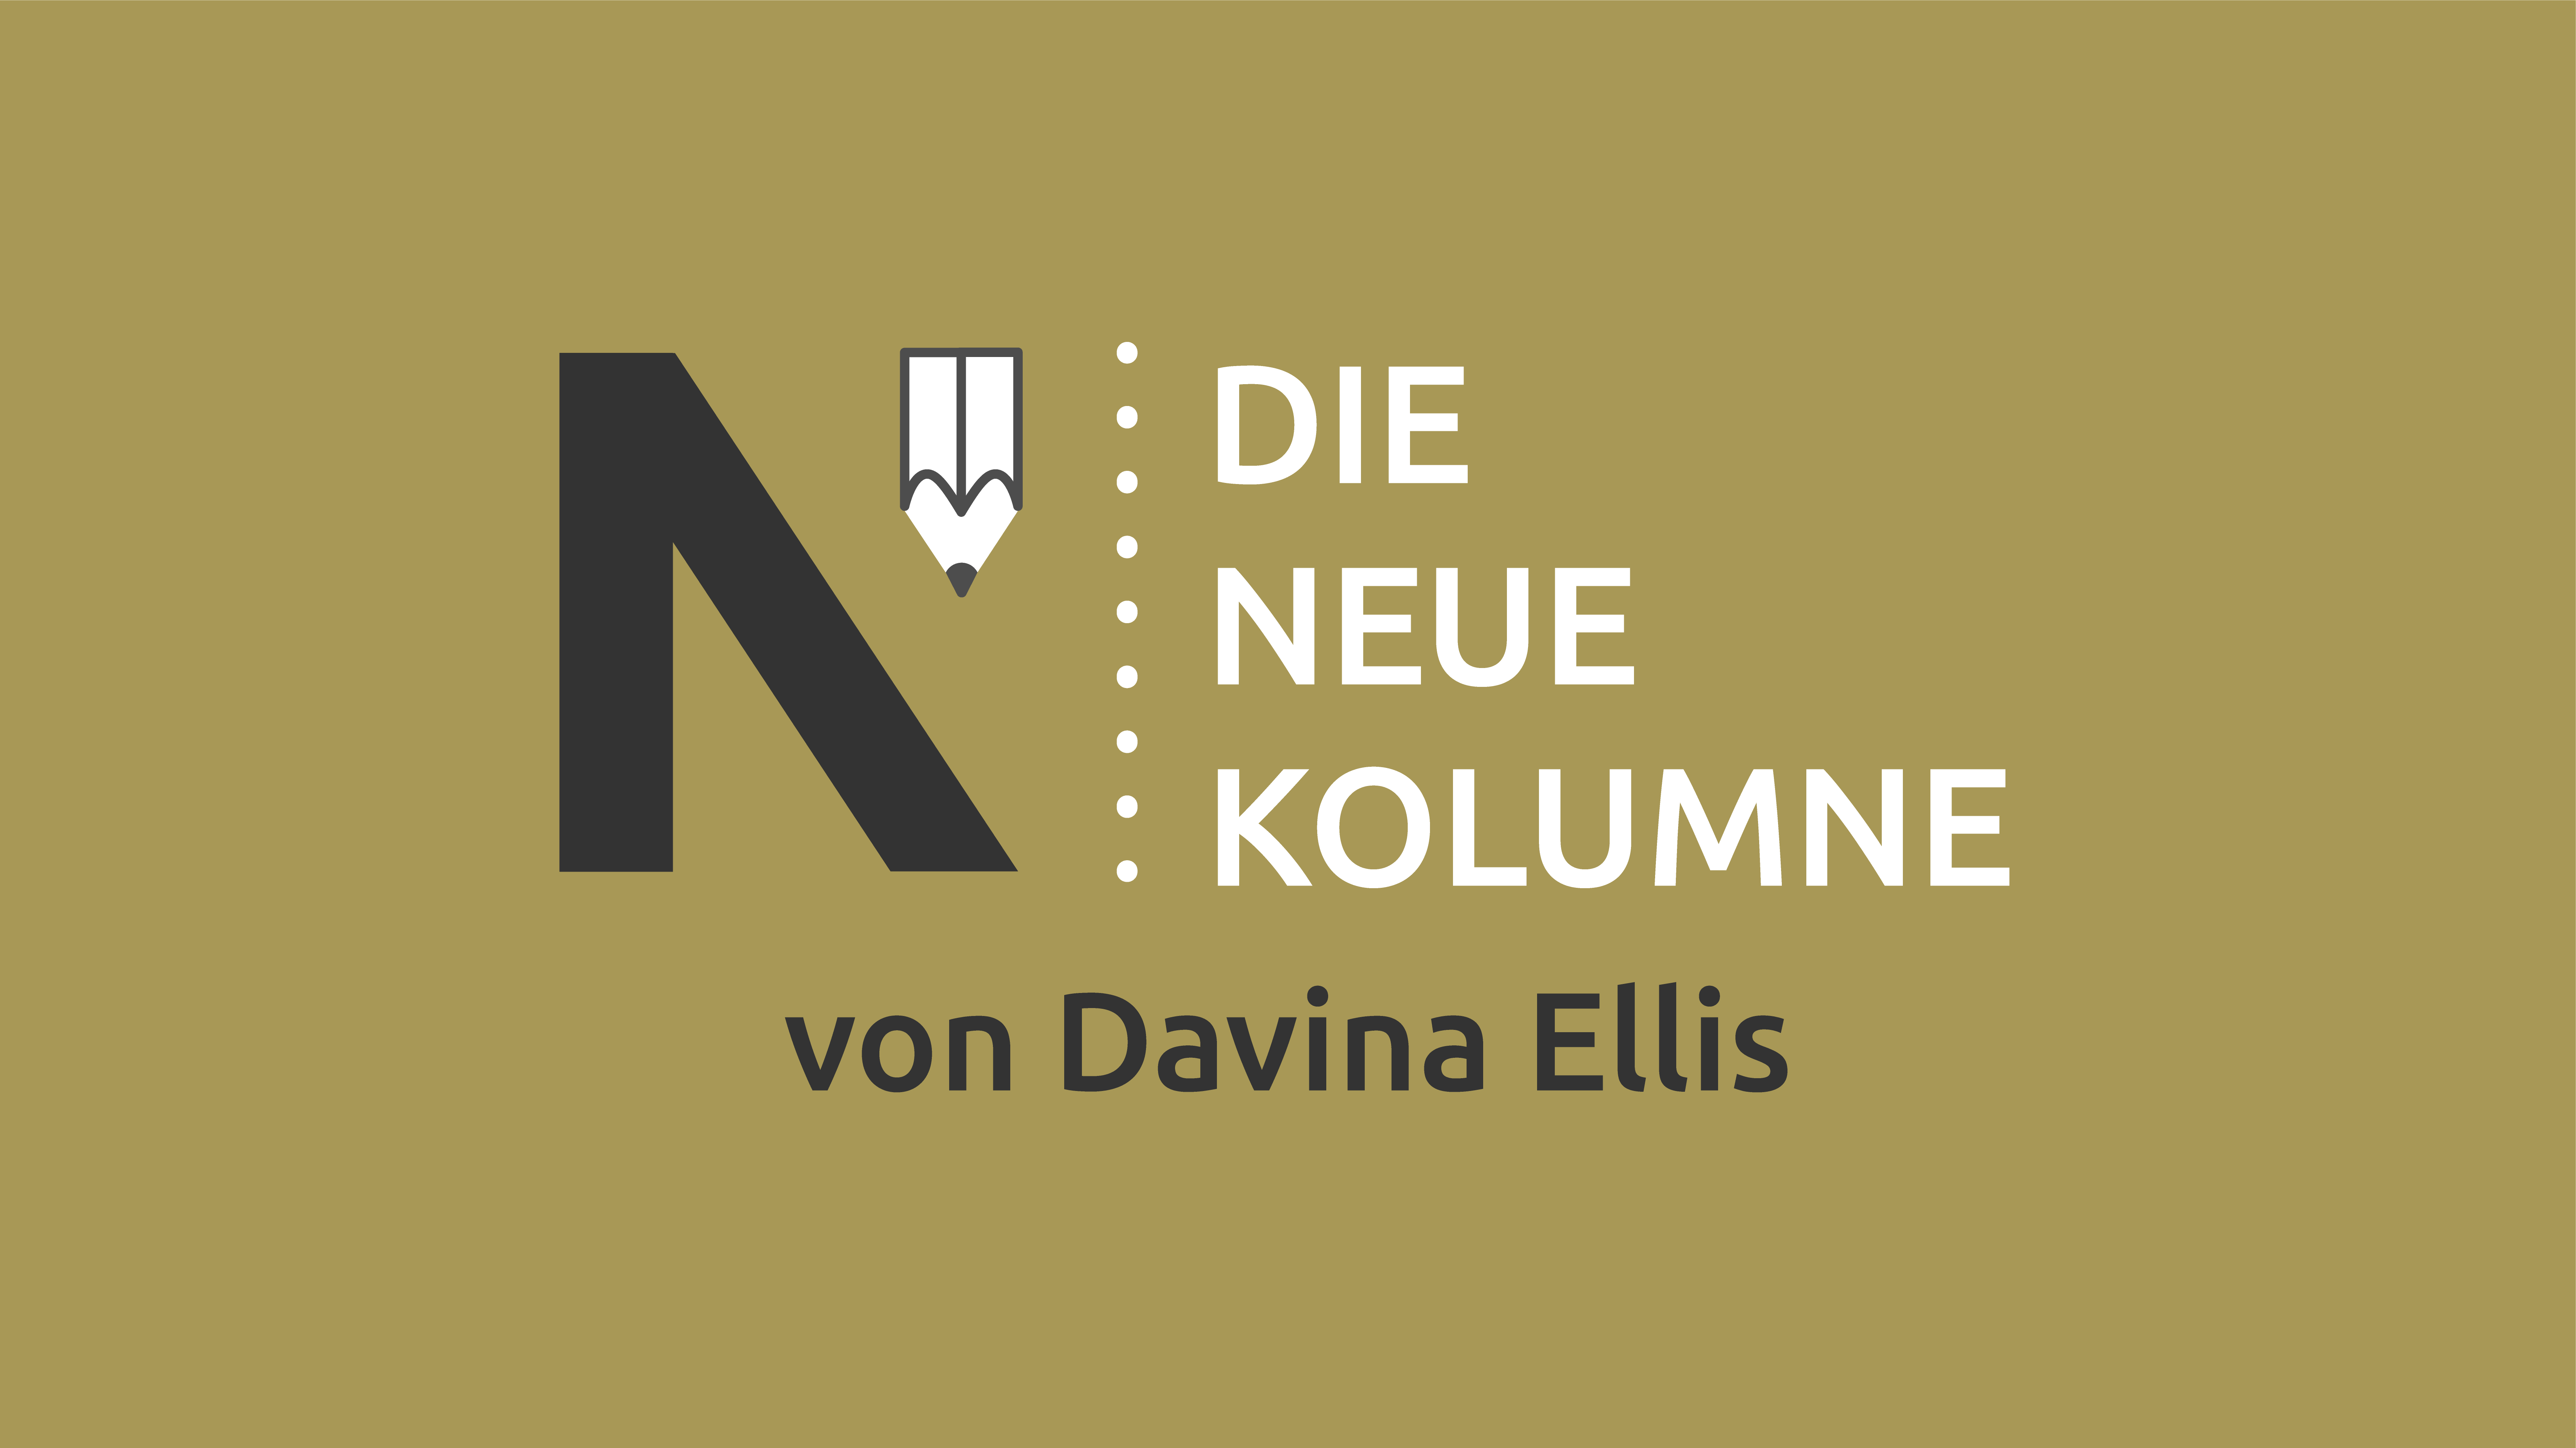 Das Logo von Die Neue Norm auf gelblichem Grund. Rechts davon steht: Die Neue Kolumne. Unten steht: Von Davina Ellis.